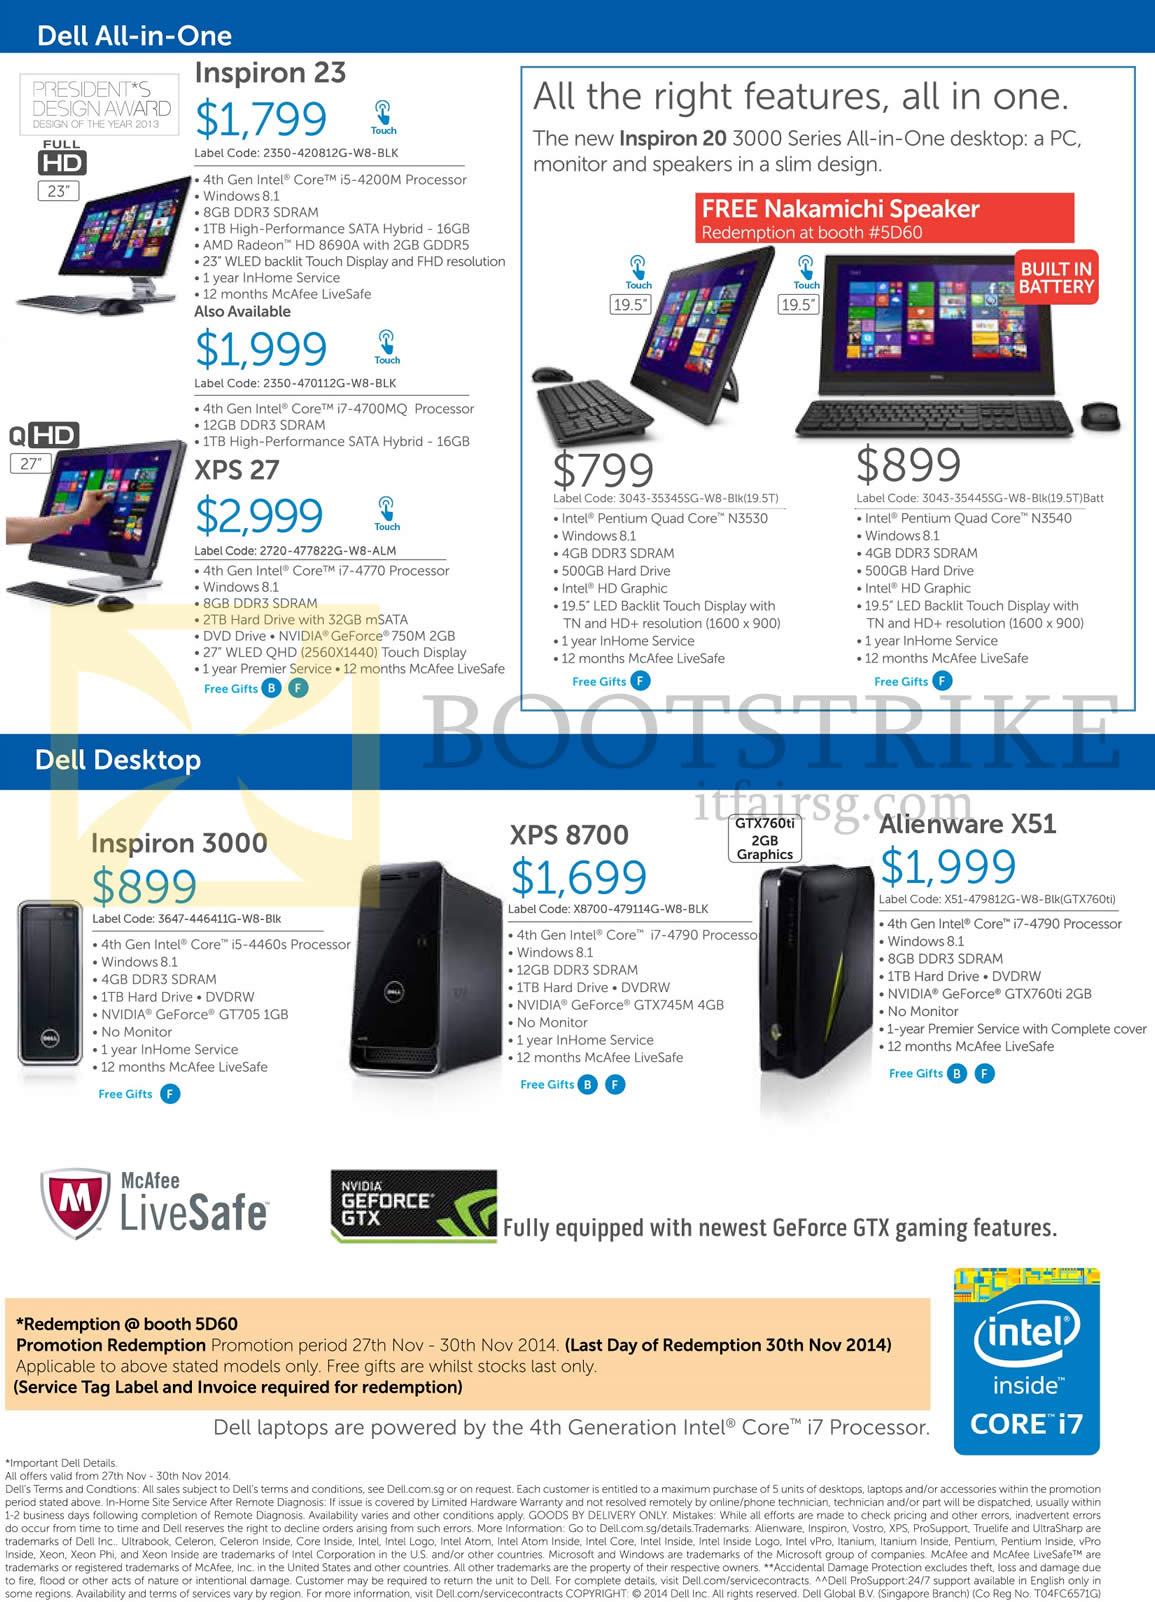 SITEX 2014 price list image brochure of Dell Notebooks, Desktop PCs, AIO Desktop PCs, Inspiron 23, 3000, 20 3000 Series, XPS 27, XPS 8700, Alienware X51